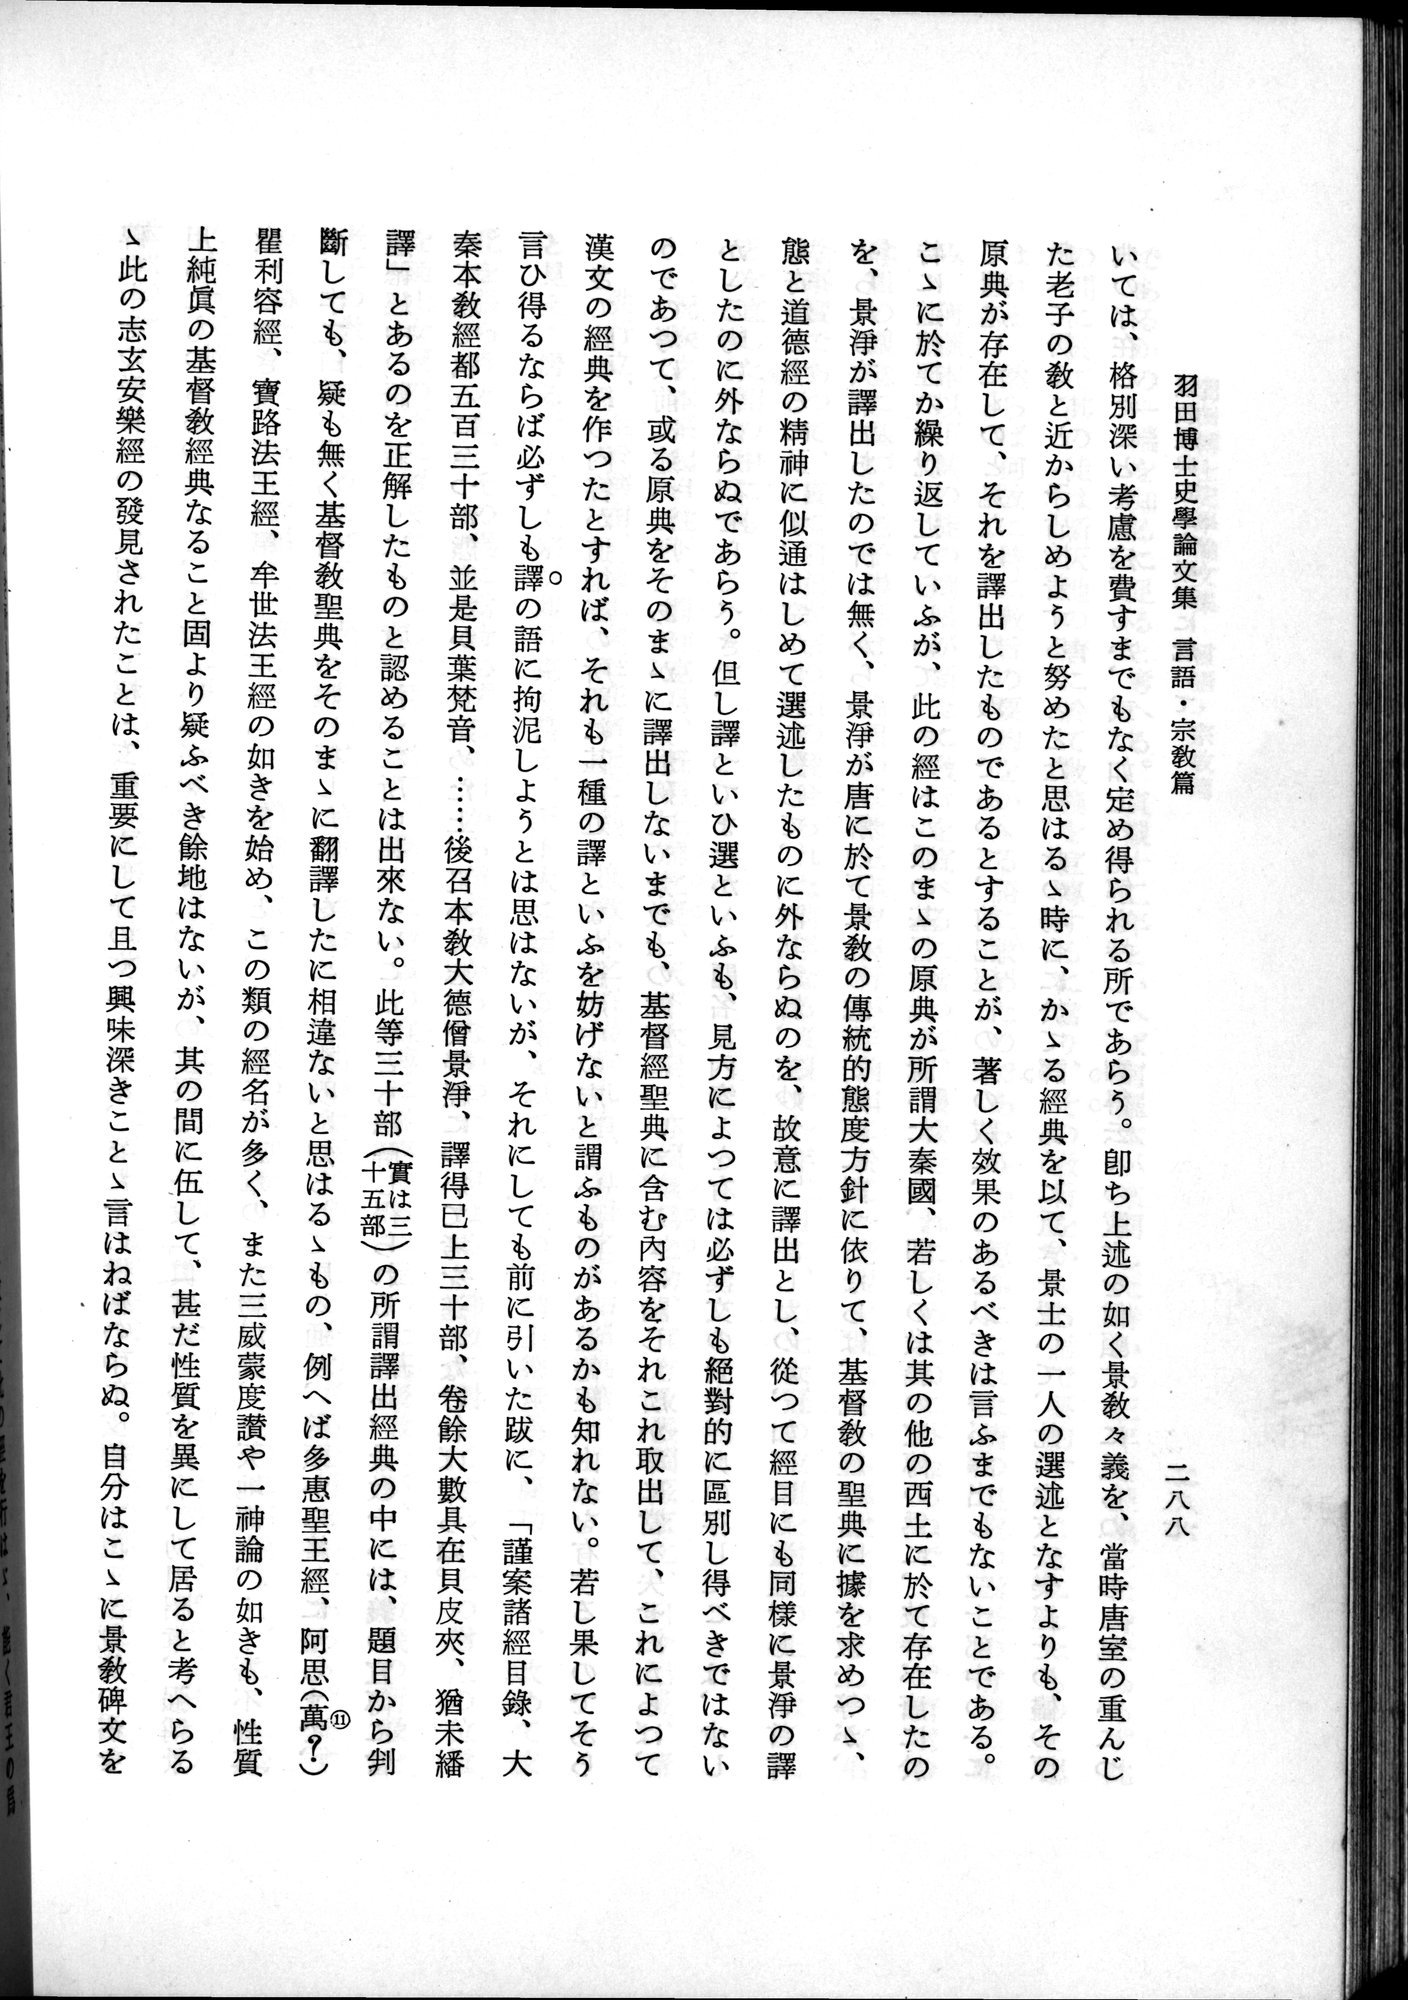 羽田博士史学論文集 : vol.2 / Page 350 (Grayscale High Resolution Image)